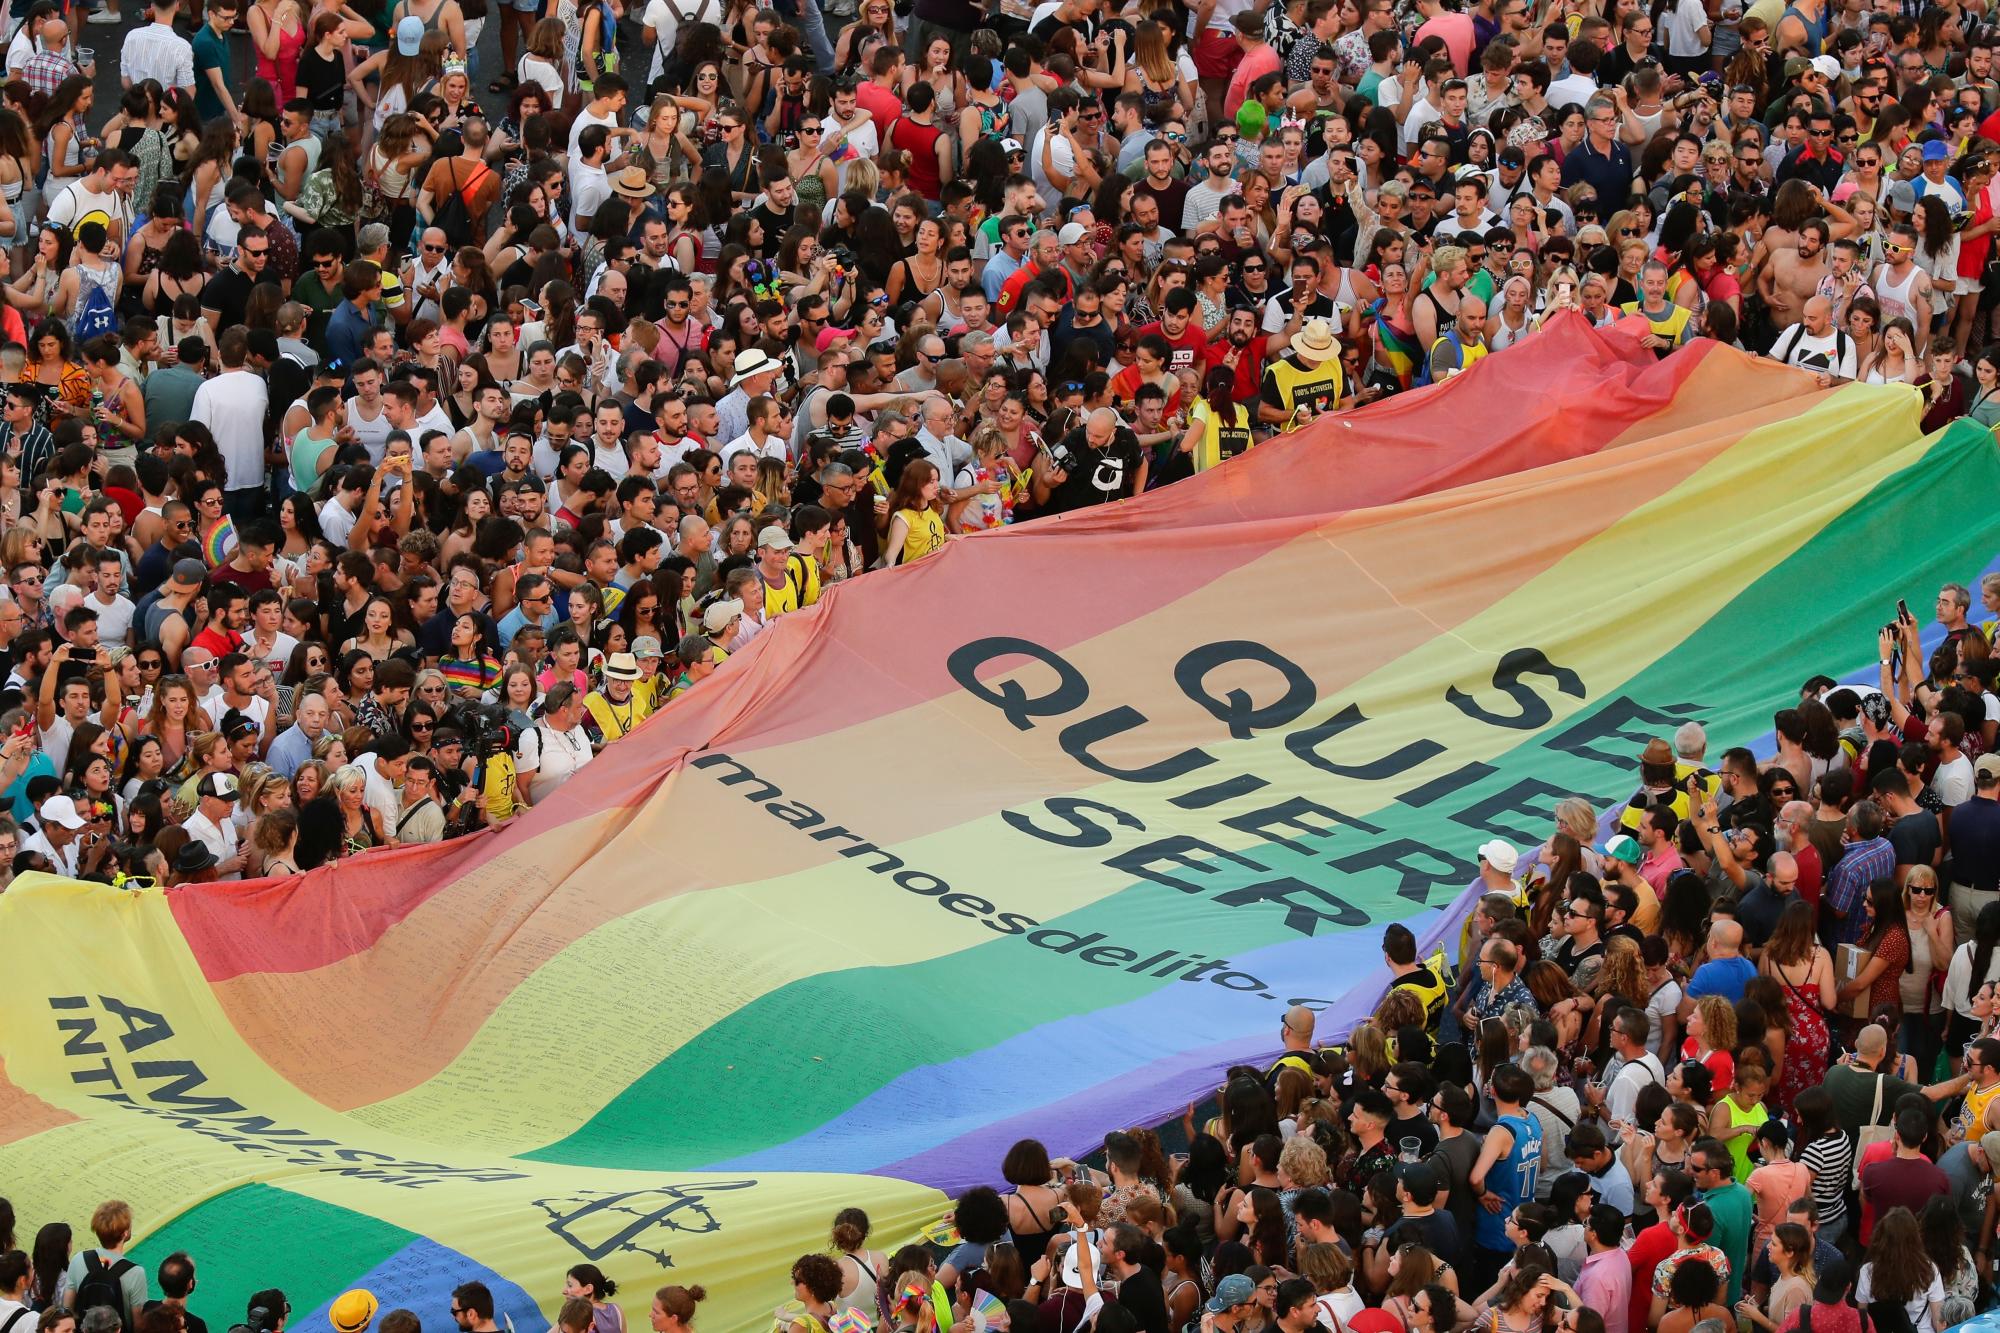 Los participantes del desfile anual del orgullo LGBTQ llevan la bandera del arco iris en Madrid, España, el sábado 6 de julio de 2019. Las ciudades europeas celebraron el orgullo LGBTQ el sábado con coloridos desfiles que también se convirtieron en plataformas para las demandas políticas y un rechazo contra los partidos populistas de extrema derecha. . Los eventos de este año en Londres, Madrid o Budapest marcan el 50 aniversario del levantamiento de Stonewall Inn en Nueva York contra la persecución policial, un punto de inflexión en el movimiento moderno de los derechos de los homosexuales. 